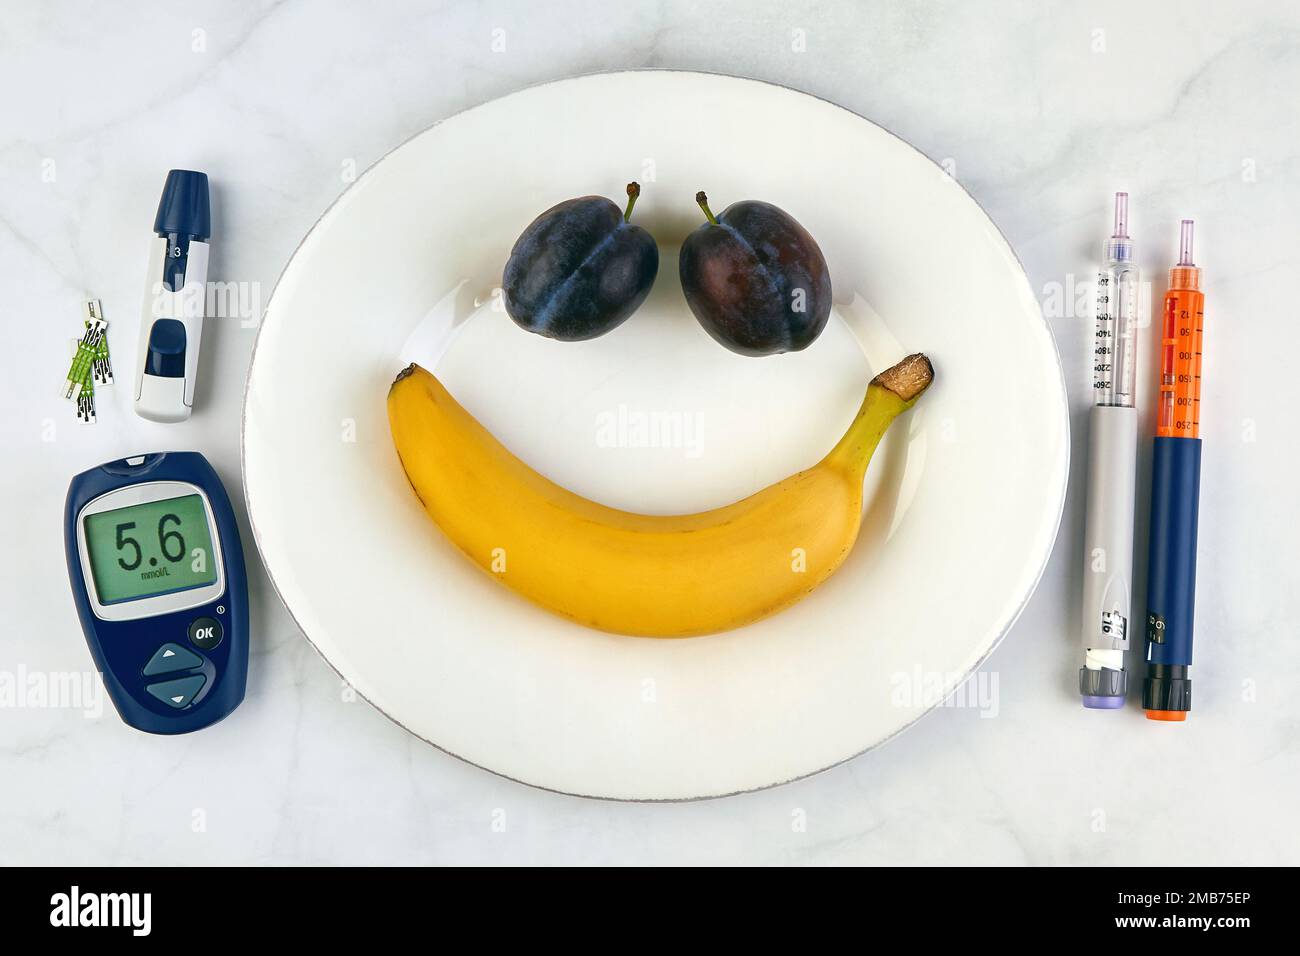 Banane et prunes sous forme de smiley visage sur une plaque blanche et des stylos à seringue d'insuline et un glucomètre comme coutellerie sur une table en marbre Banque D'Images